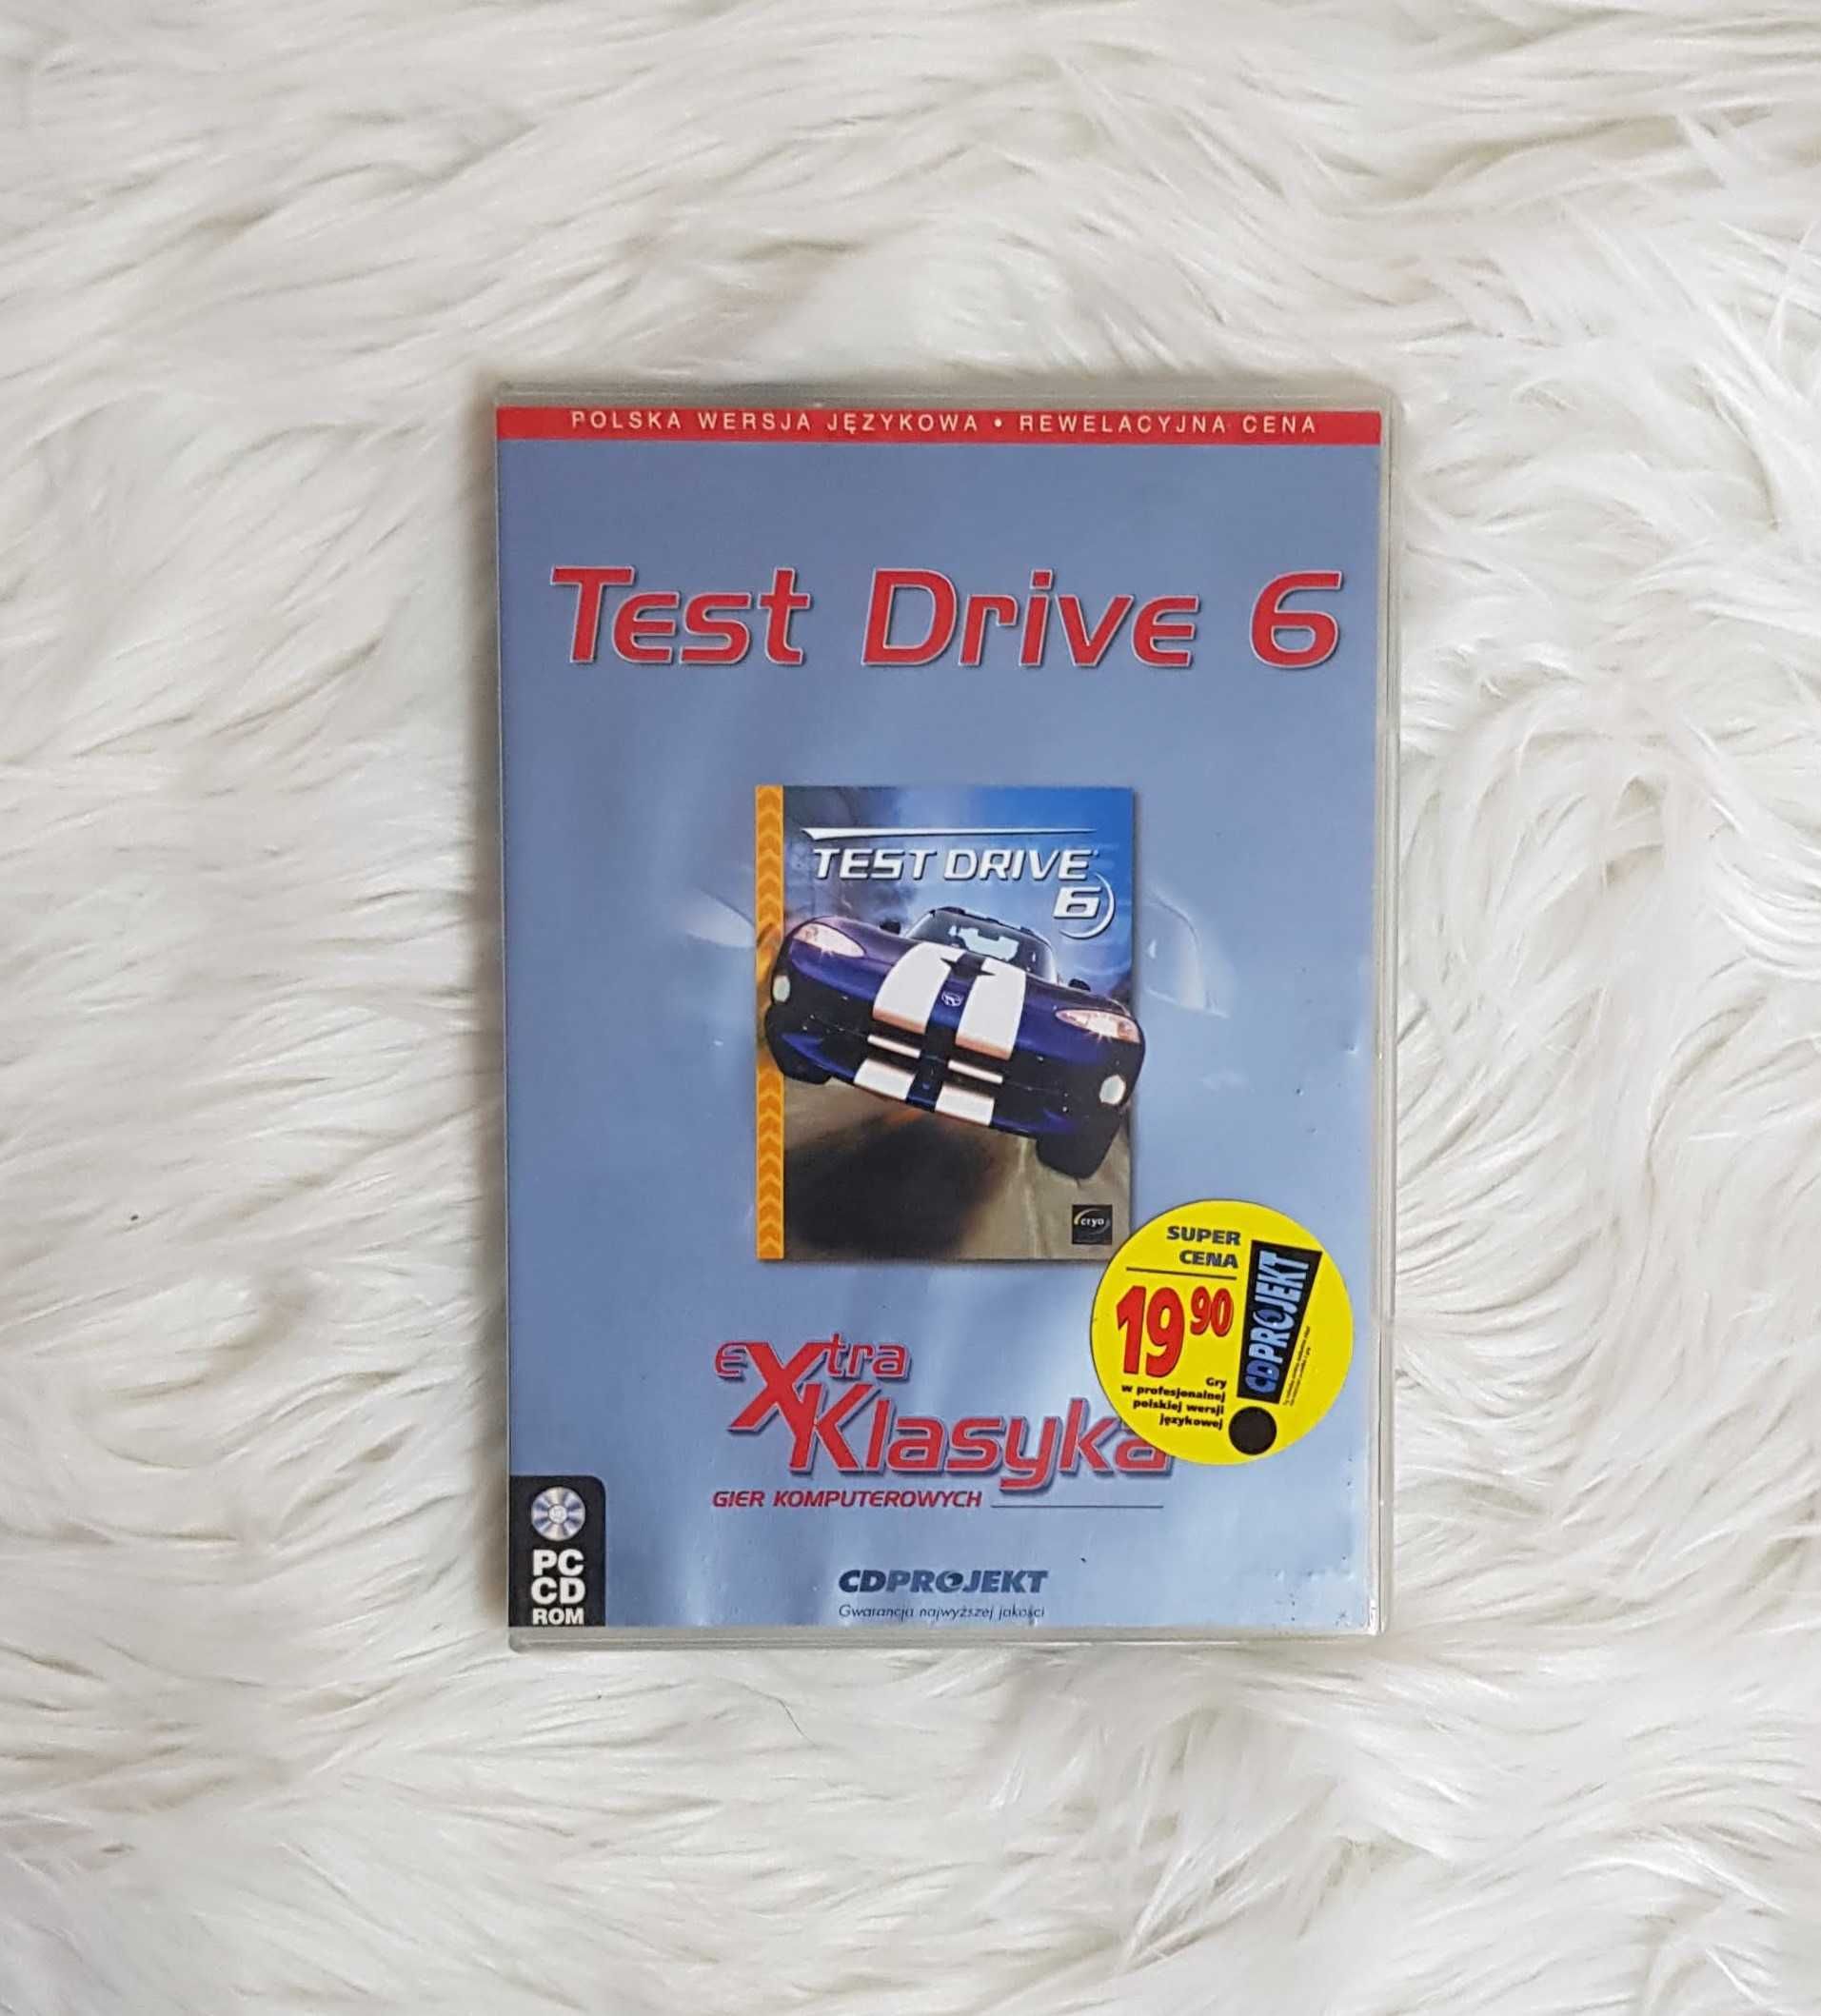 Test Drive 6 gra komputerowa PC wyścigi samochodowe wersja pudełkowa